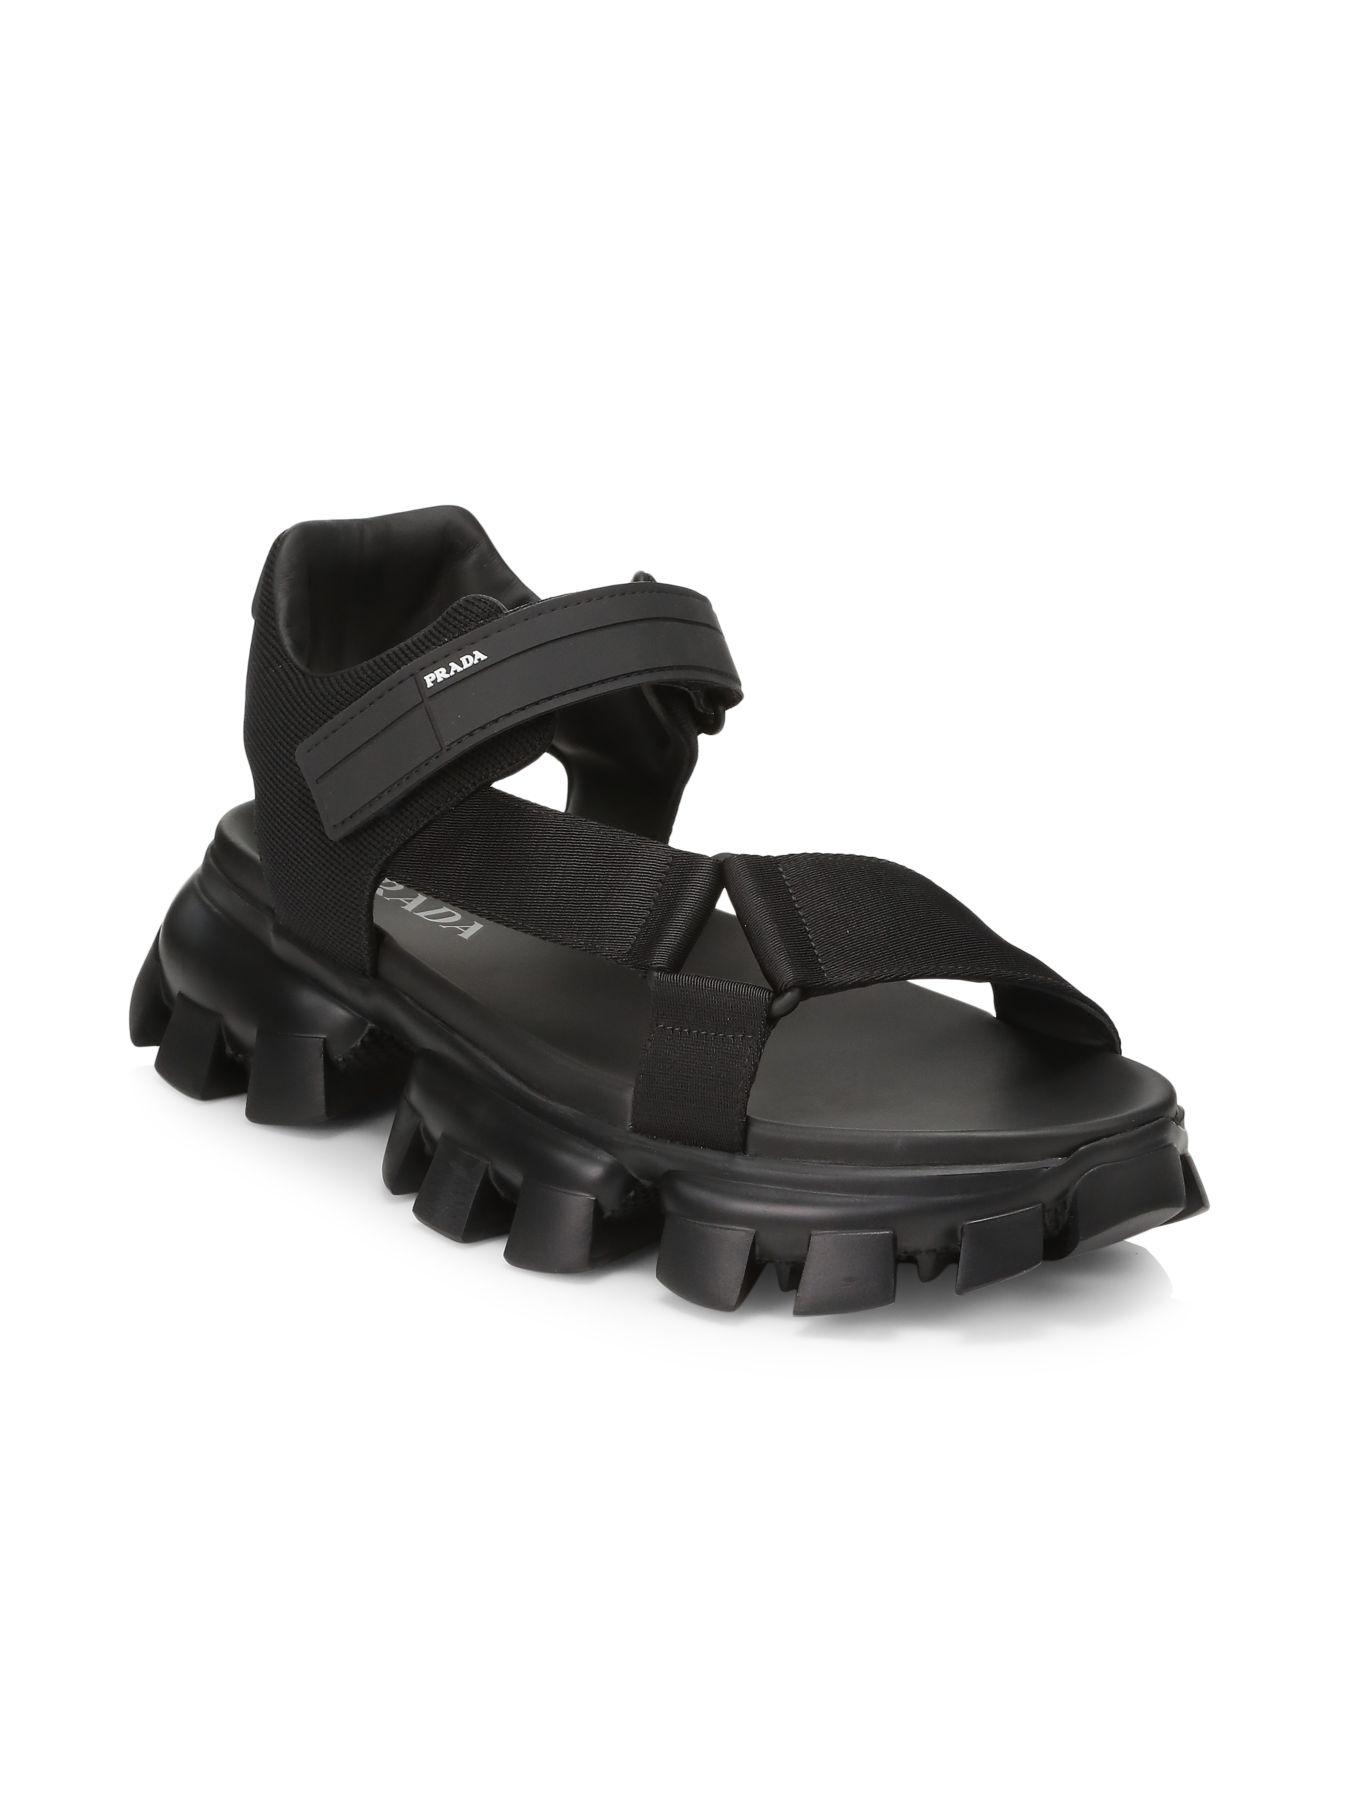 Prada Leather Nastro & Maglia Tech Sandals in Nero (Black) for Men - Lyst